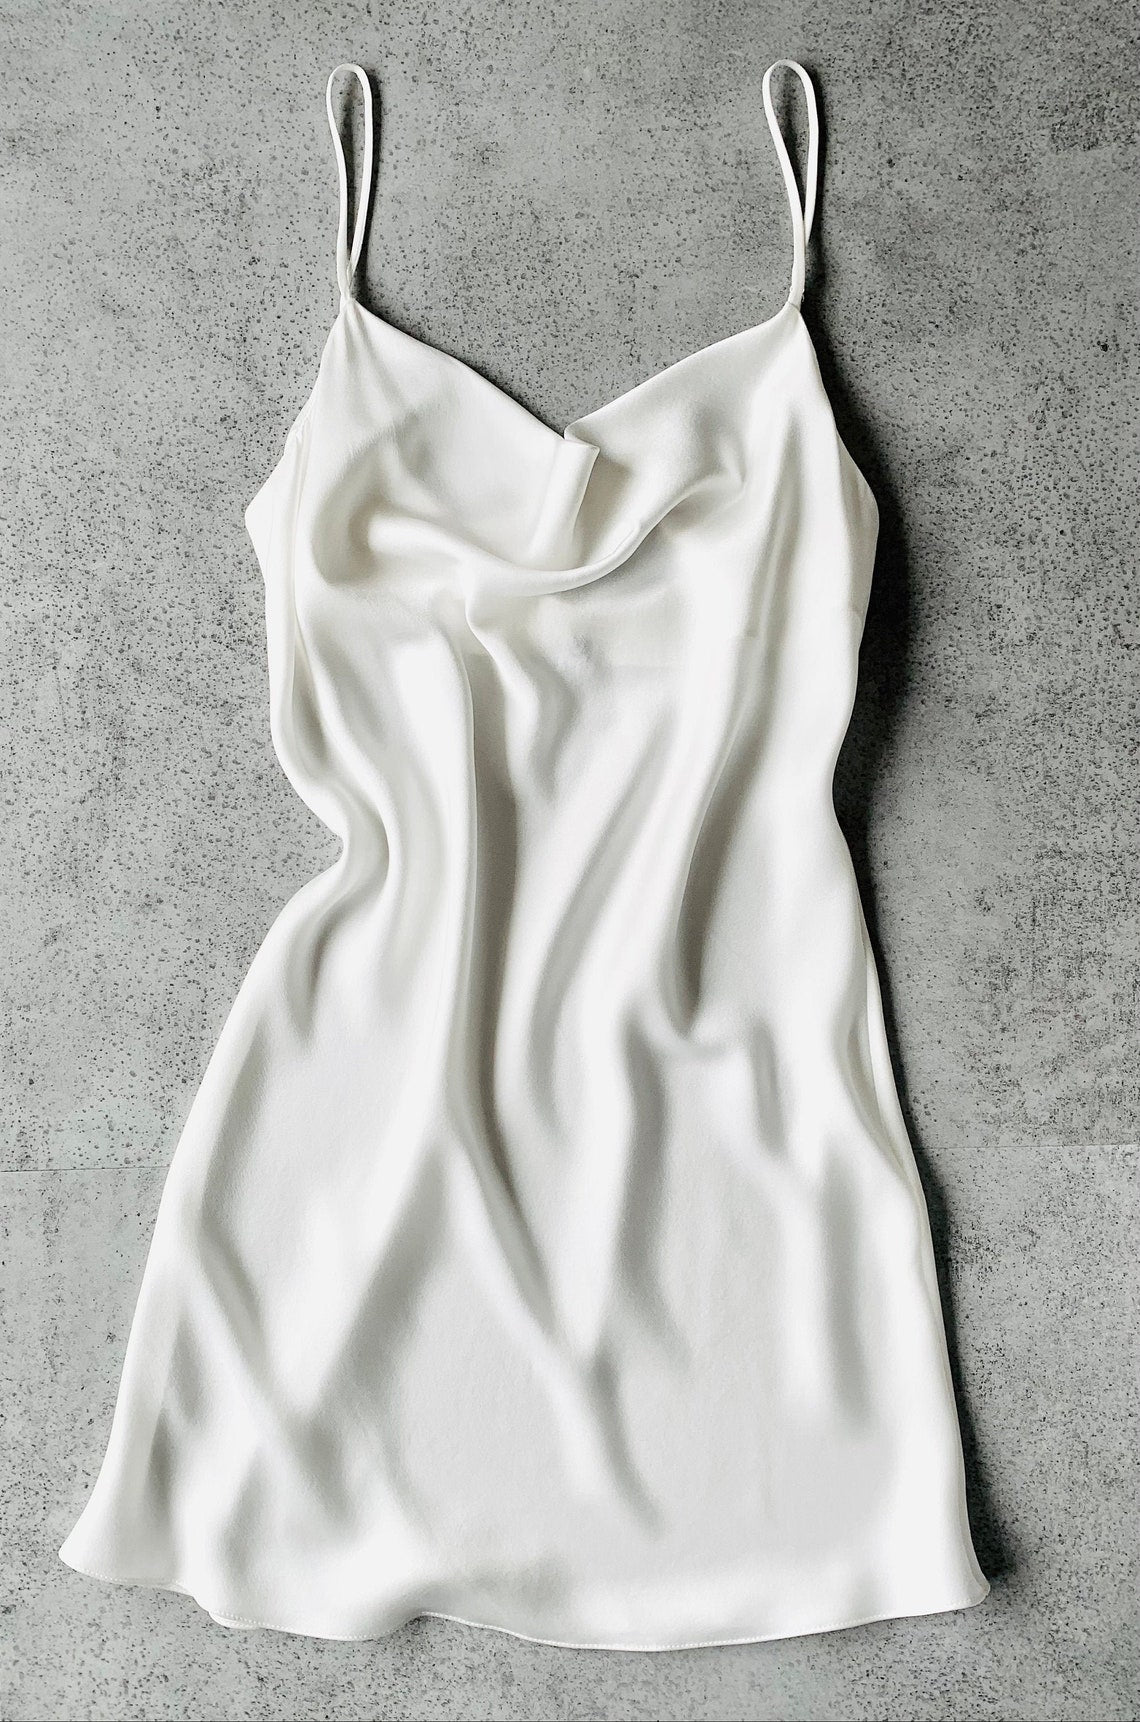 Cowl Neck Cami & Bias Cut Slip Dress Sewing Pattern | UK sizes 6-24 | Marlene